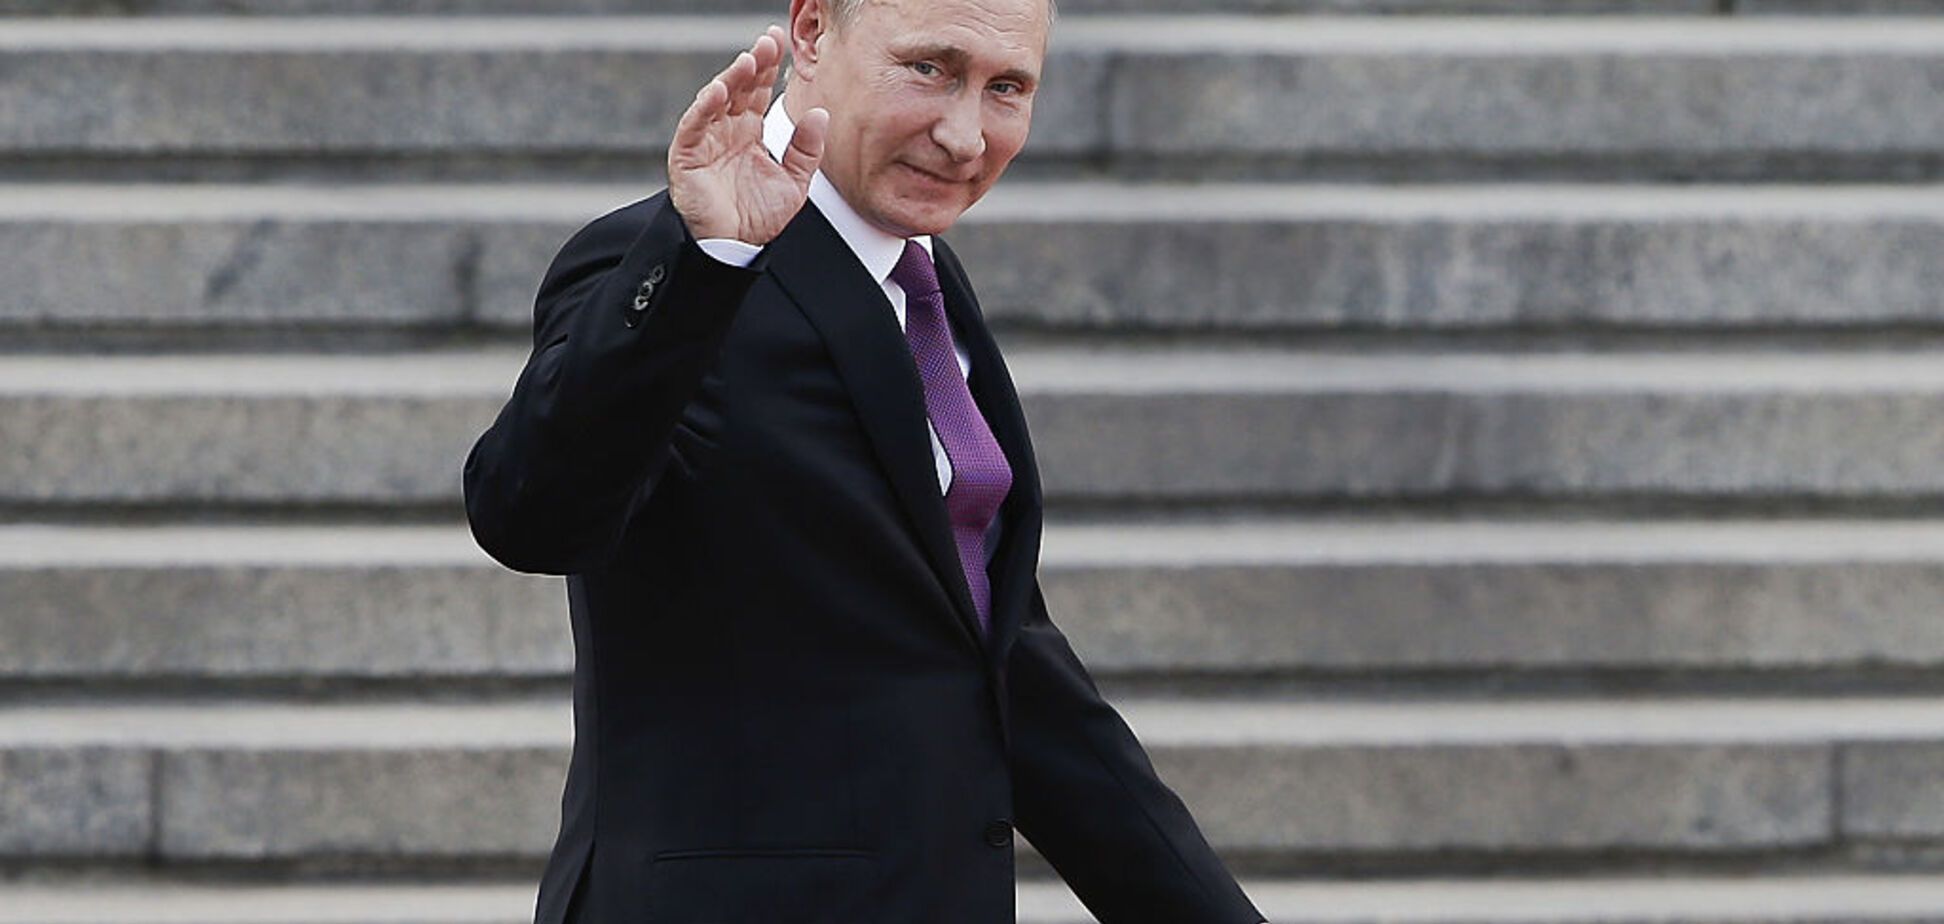 Выиграл выборы на каблуках: в сети ярко высмеяли величие Путина